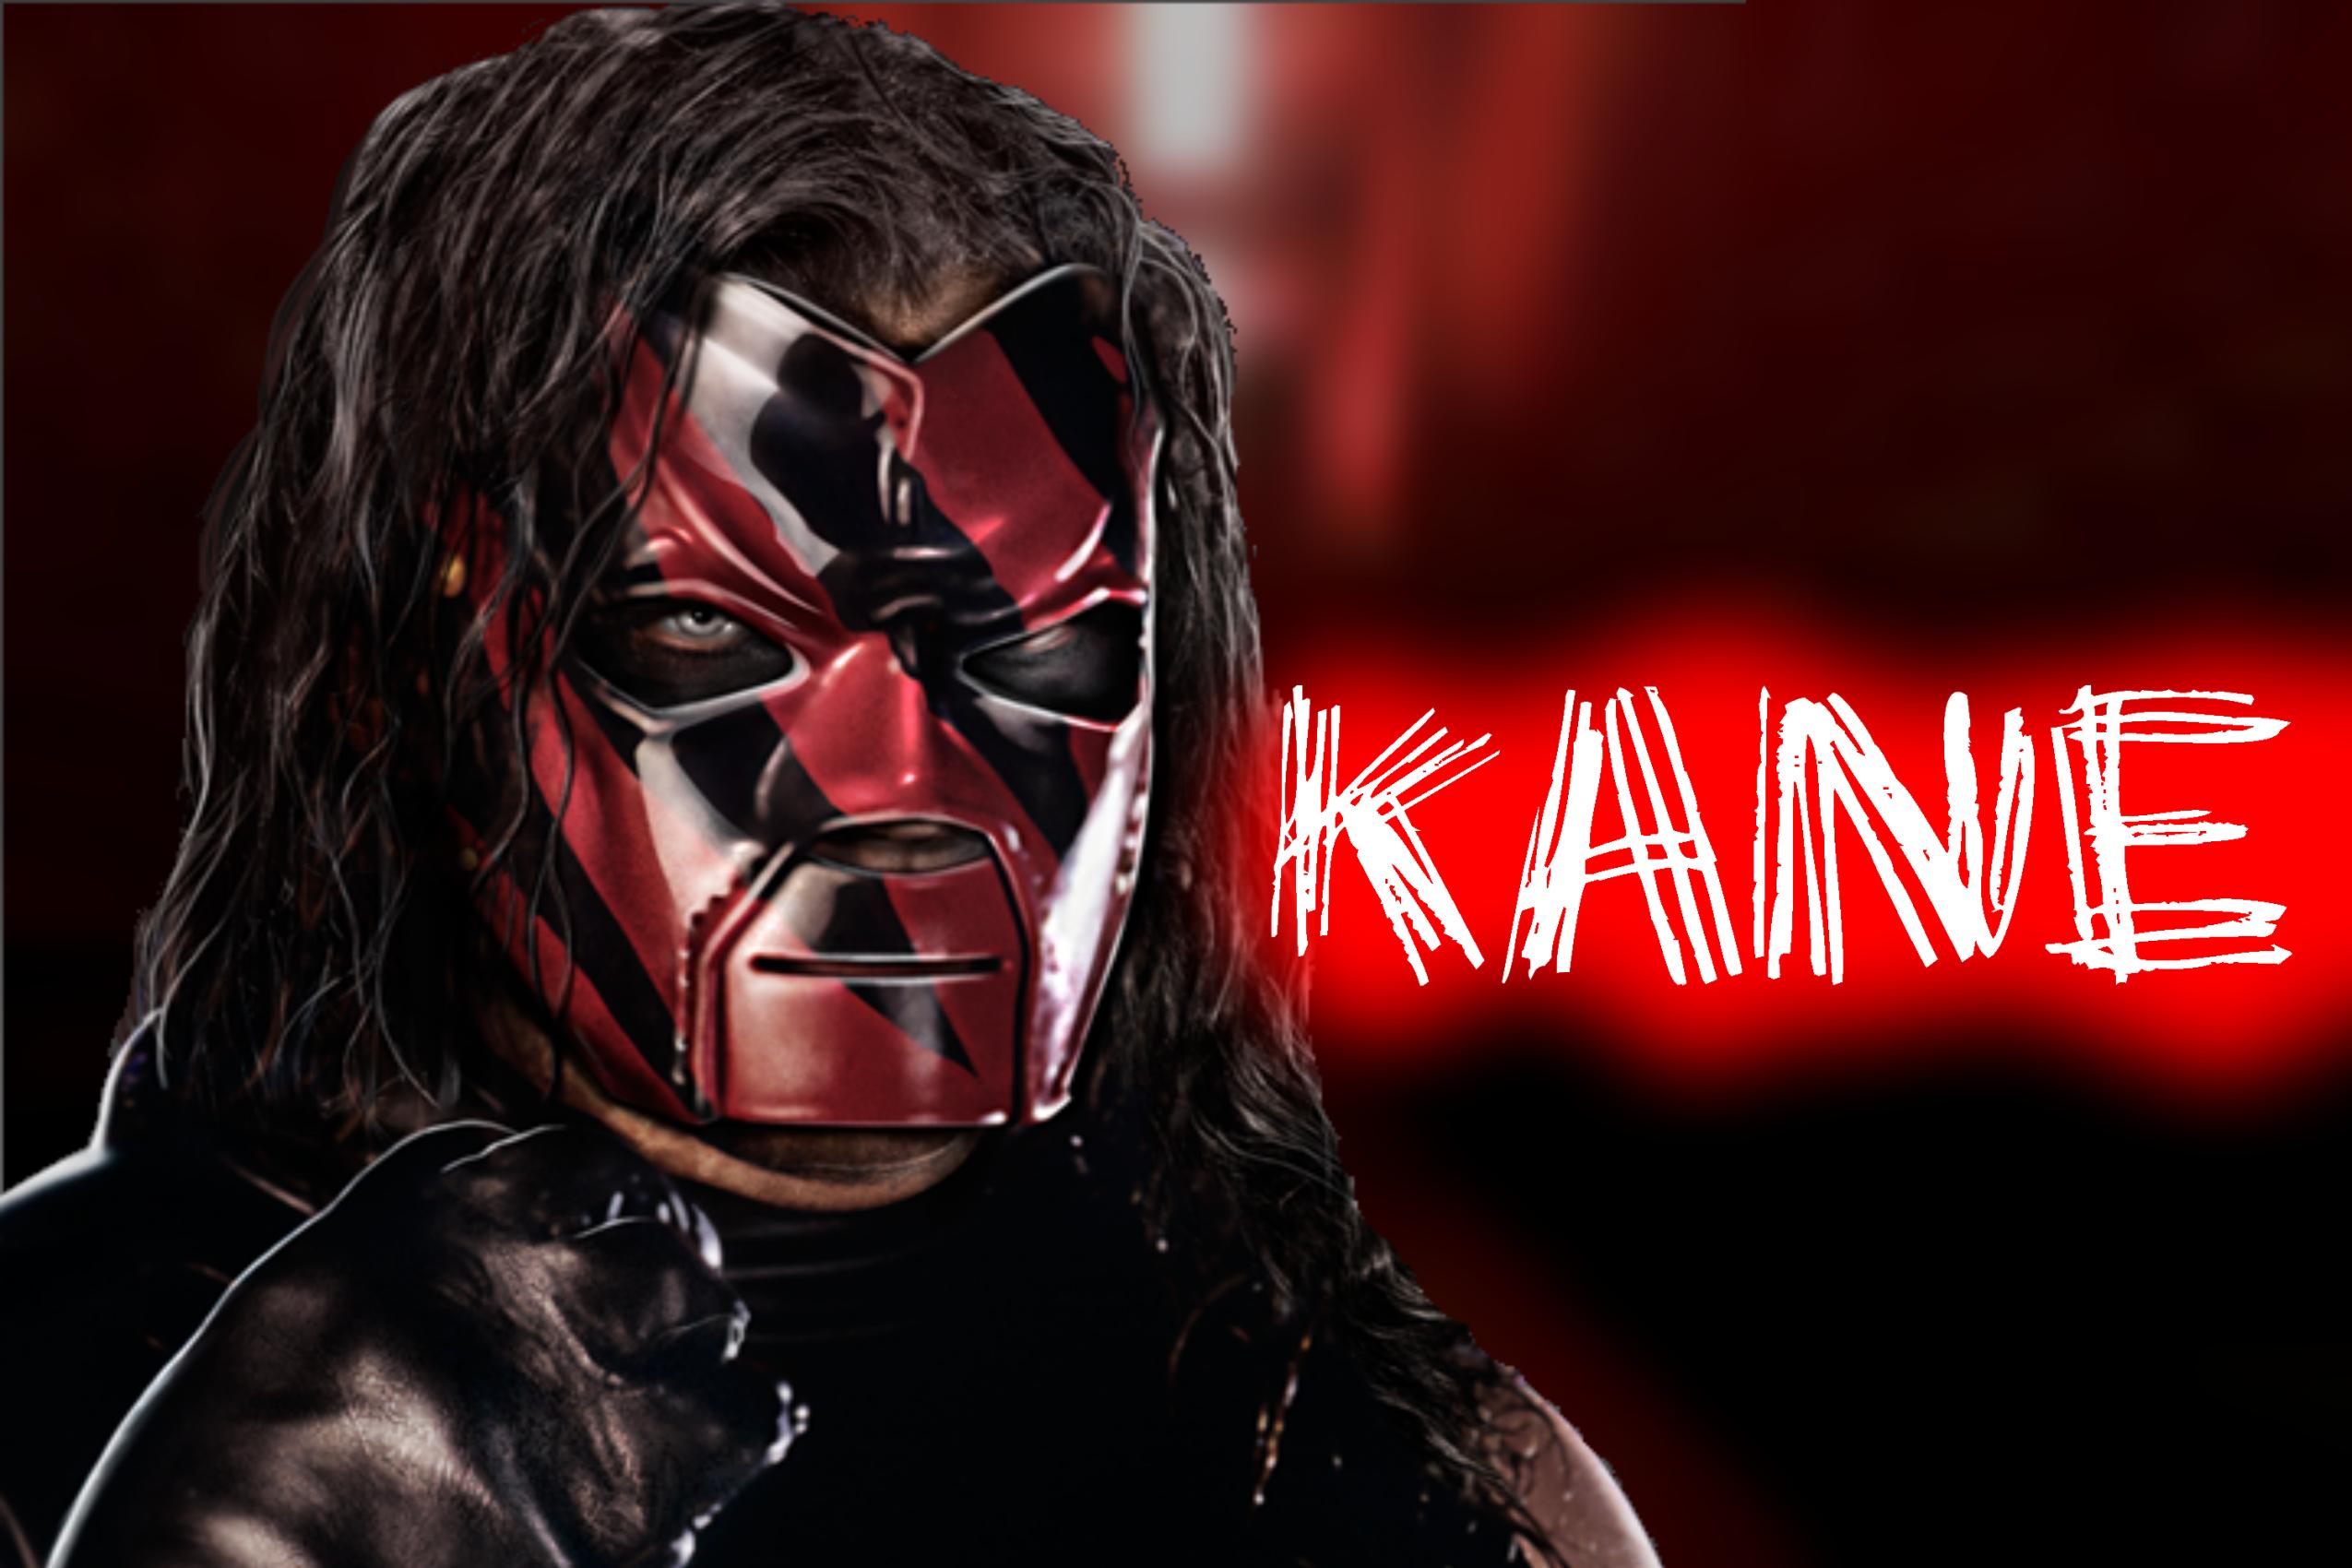 Kane Wrestler 2550x1700